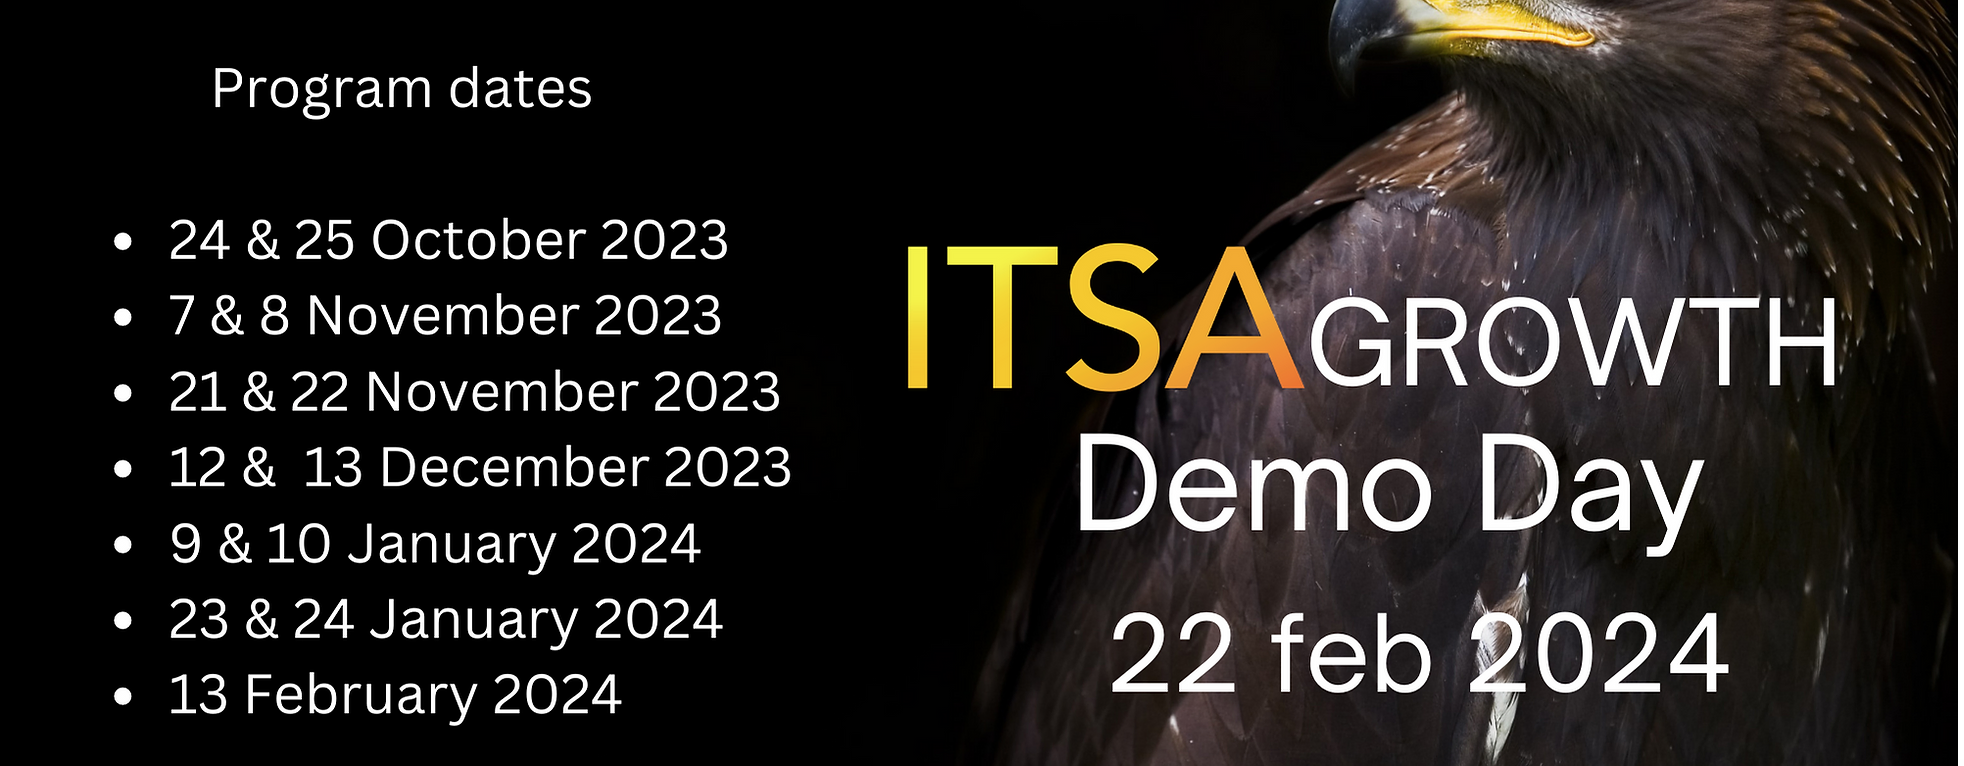 ITSA Growth nr 5 program og datoer